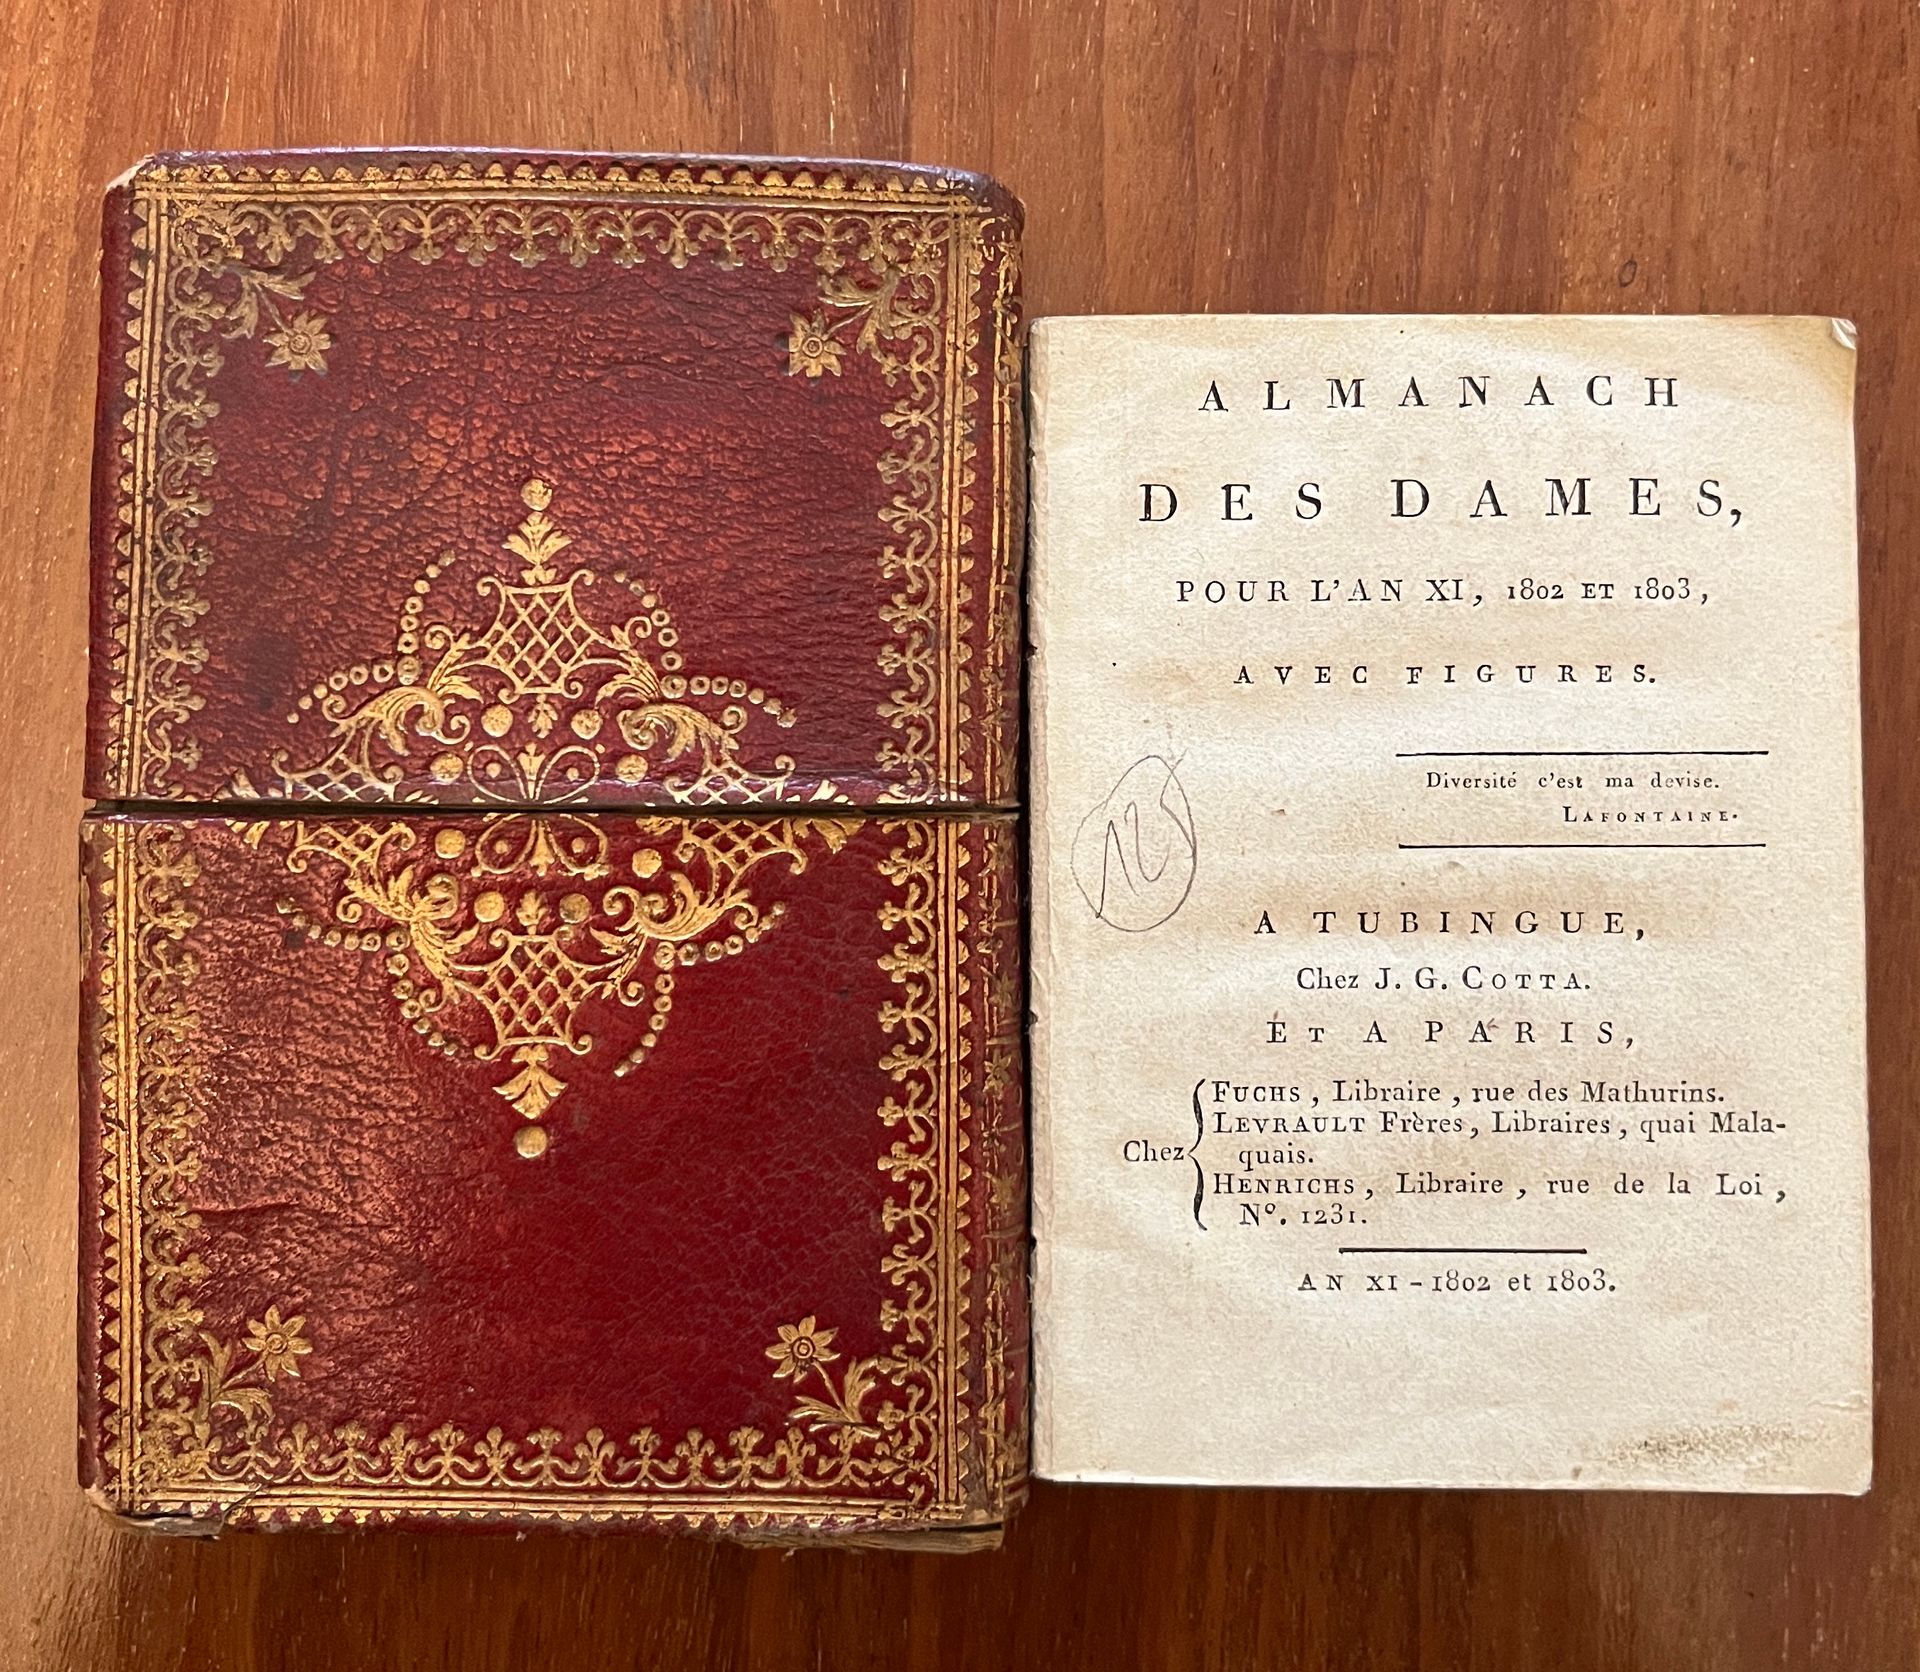 Null [ALMANACH]
Almanach der Damen für das Jahr XI, 1802 und 1803. Tubingue, che&hellip;